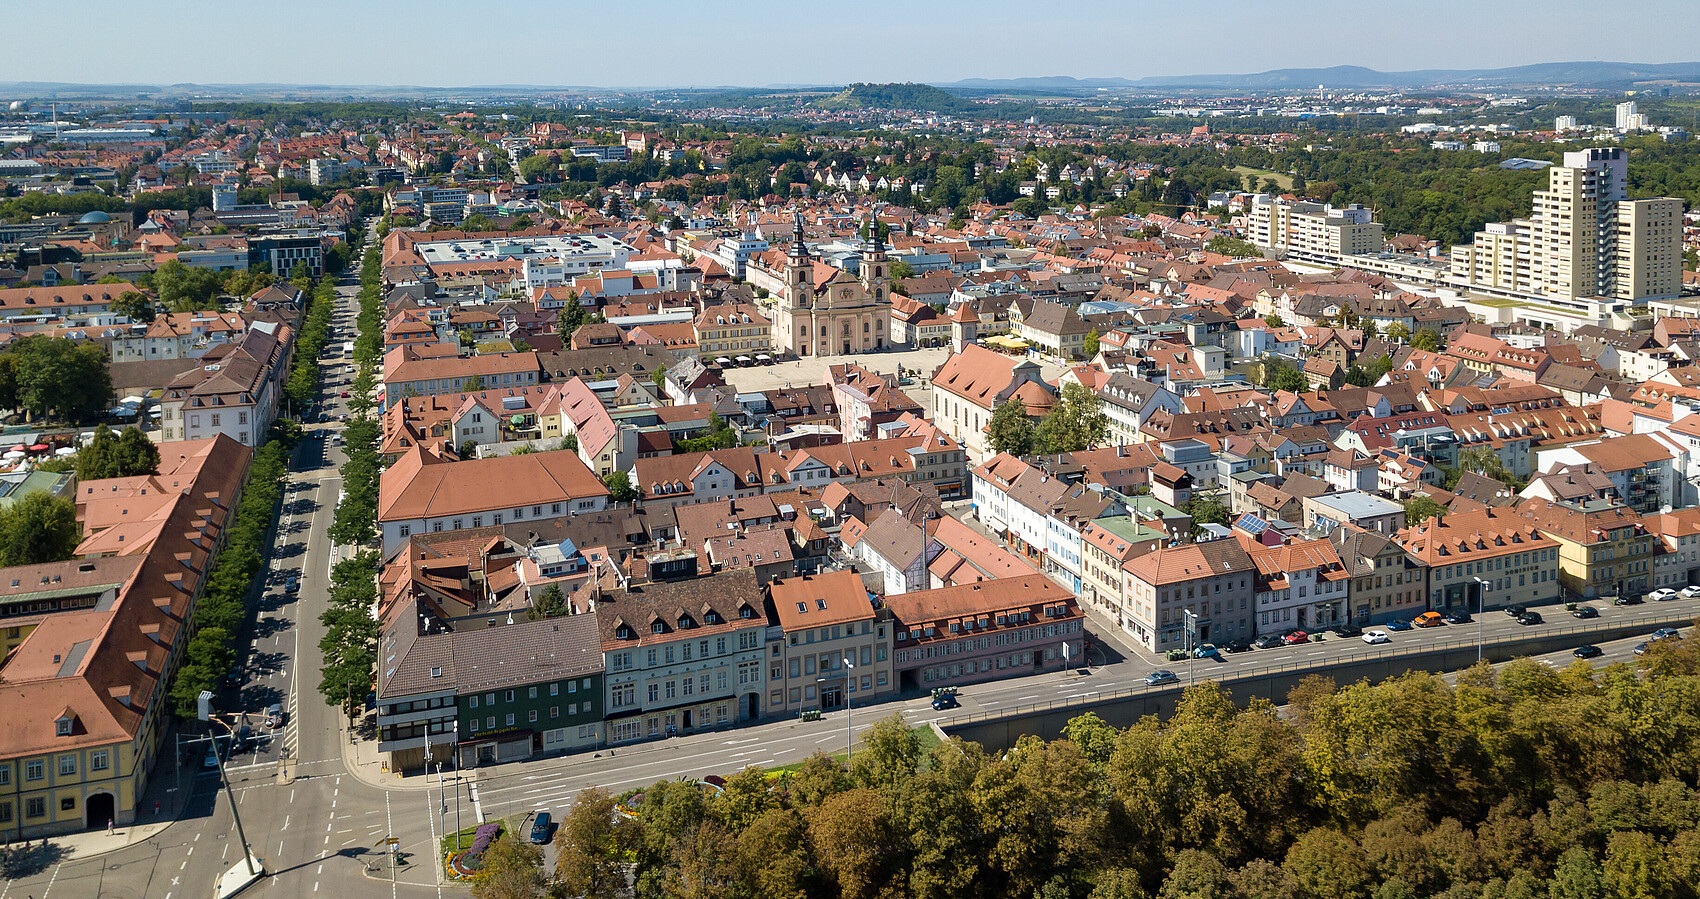 Bild zeigt die Innenstadt von Ludwigsburg von oben